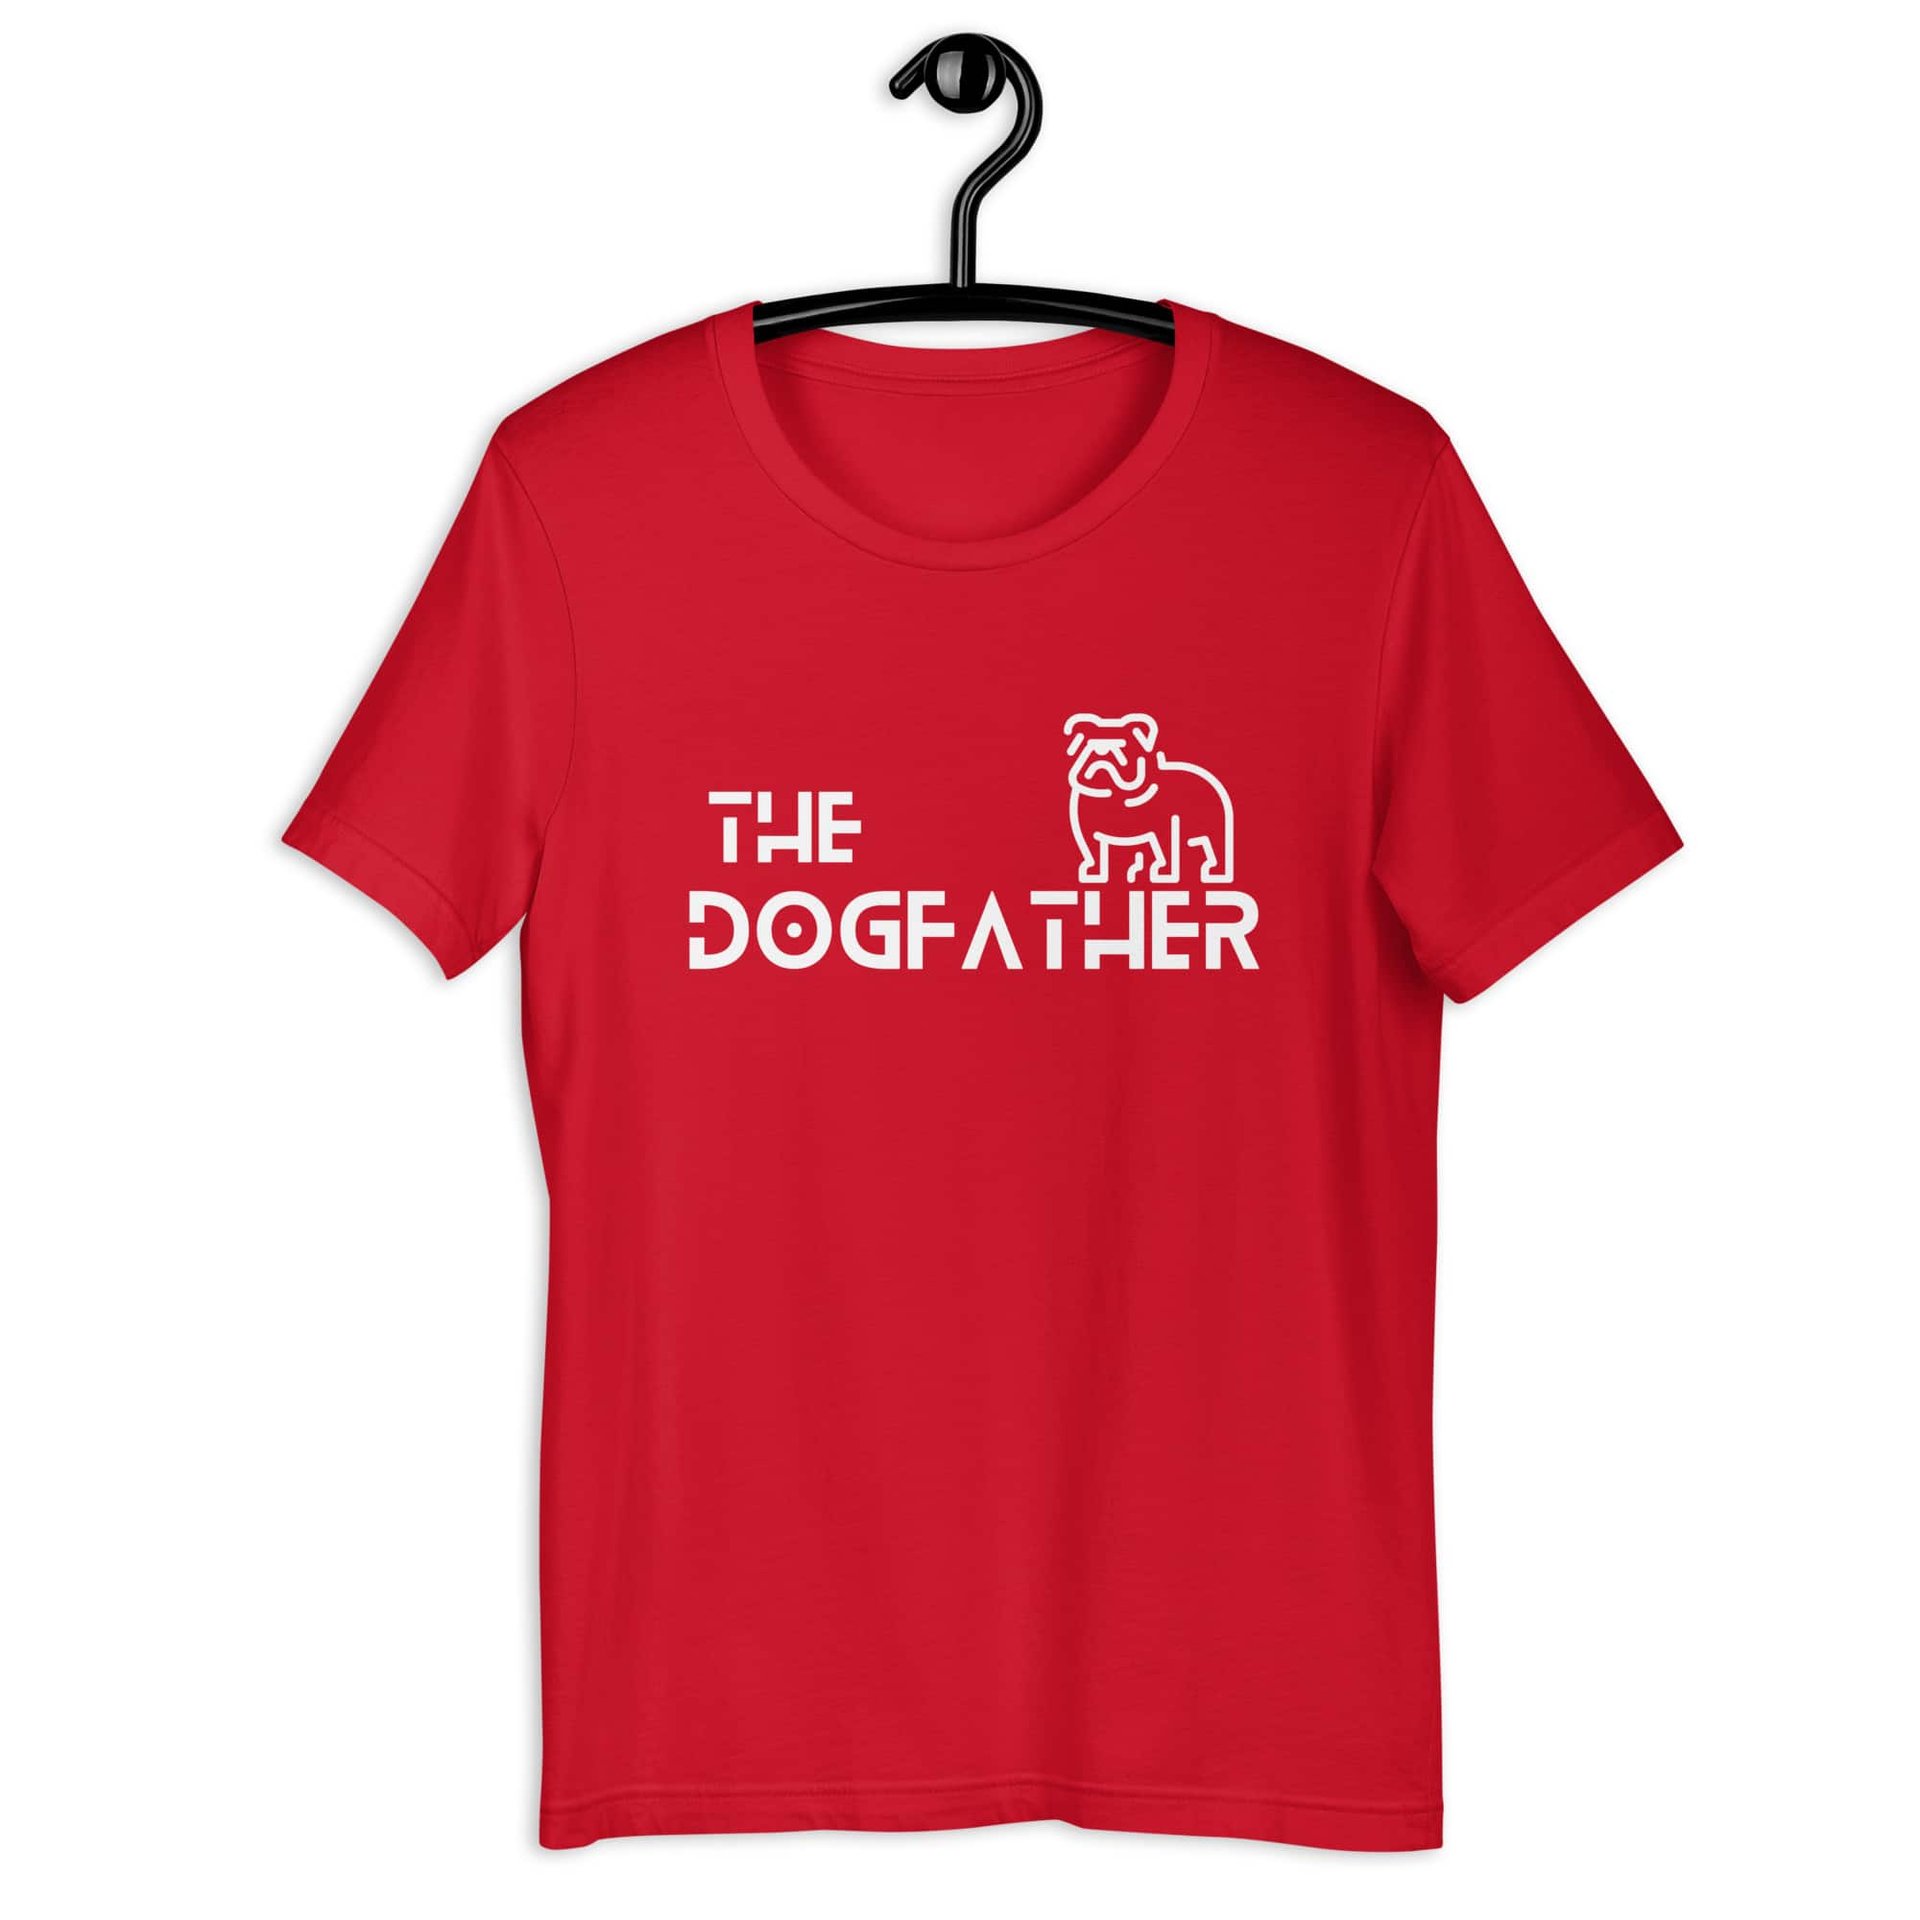 The Dogfather Bulldog Unisex T-Shirt. Cardinal